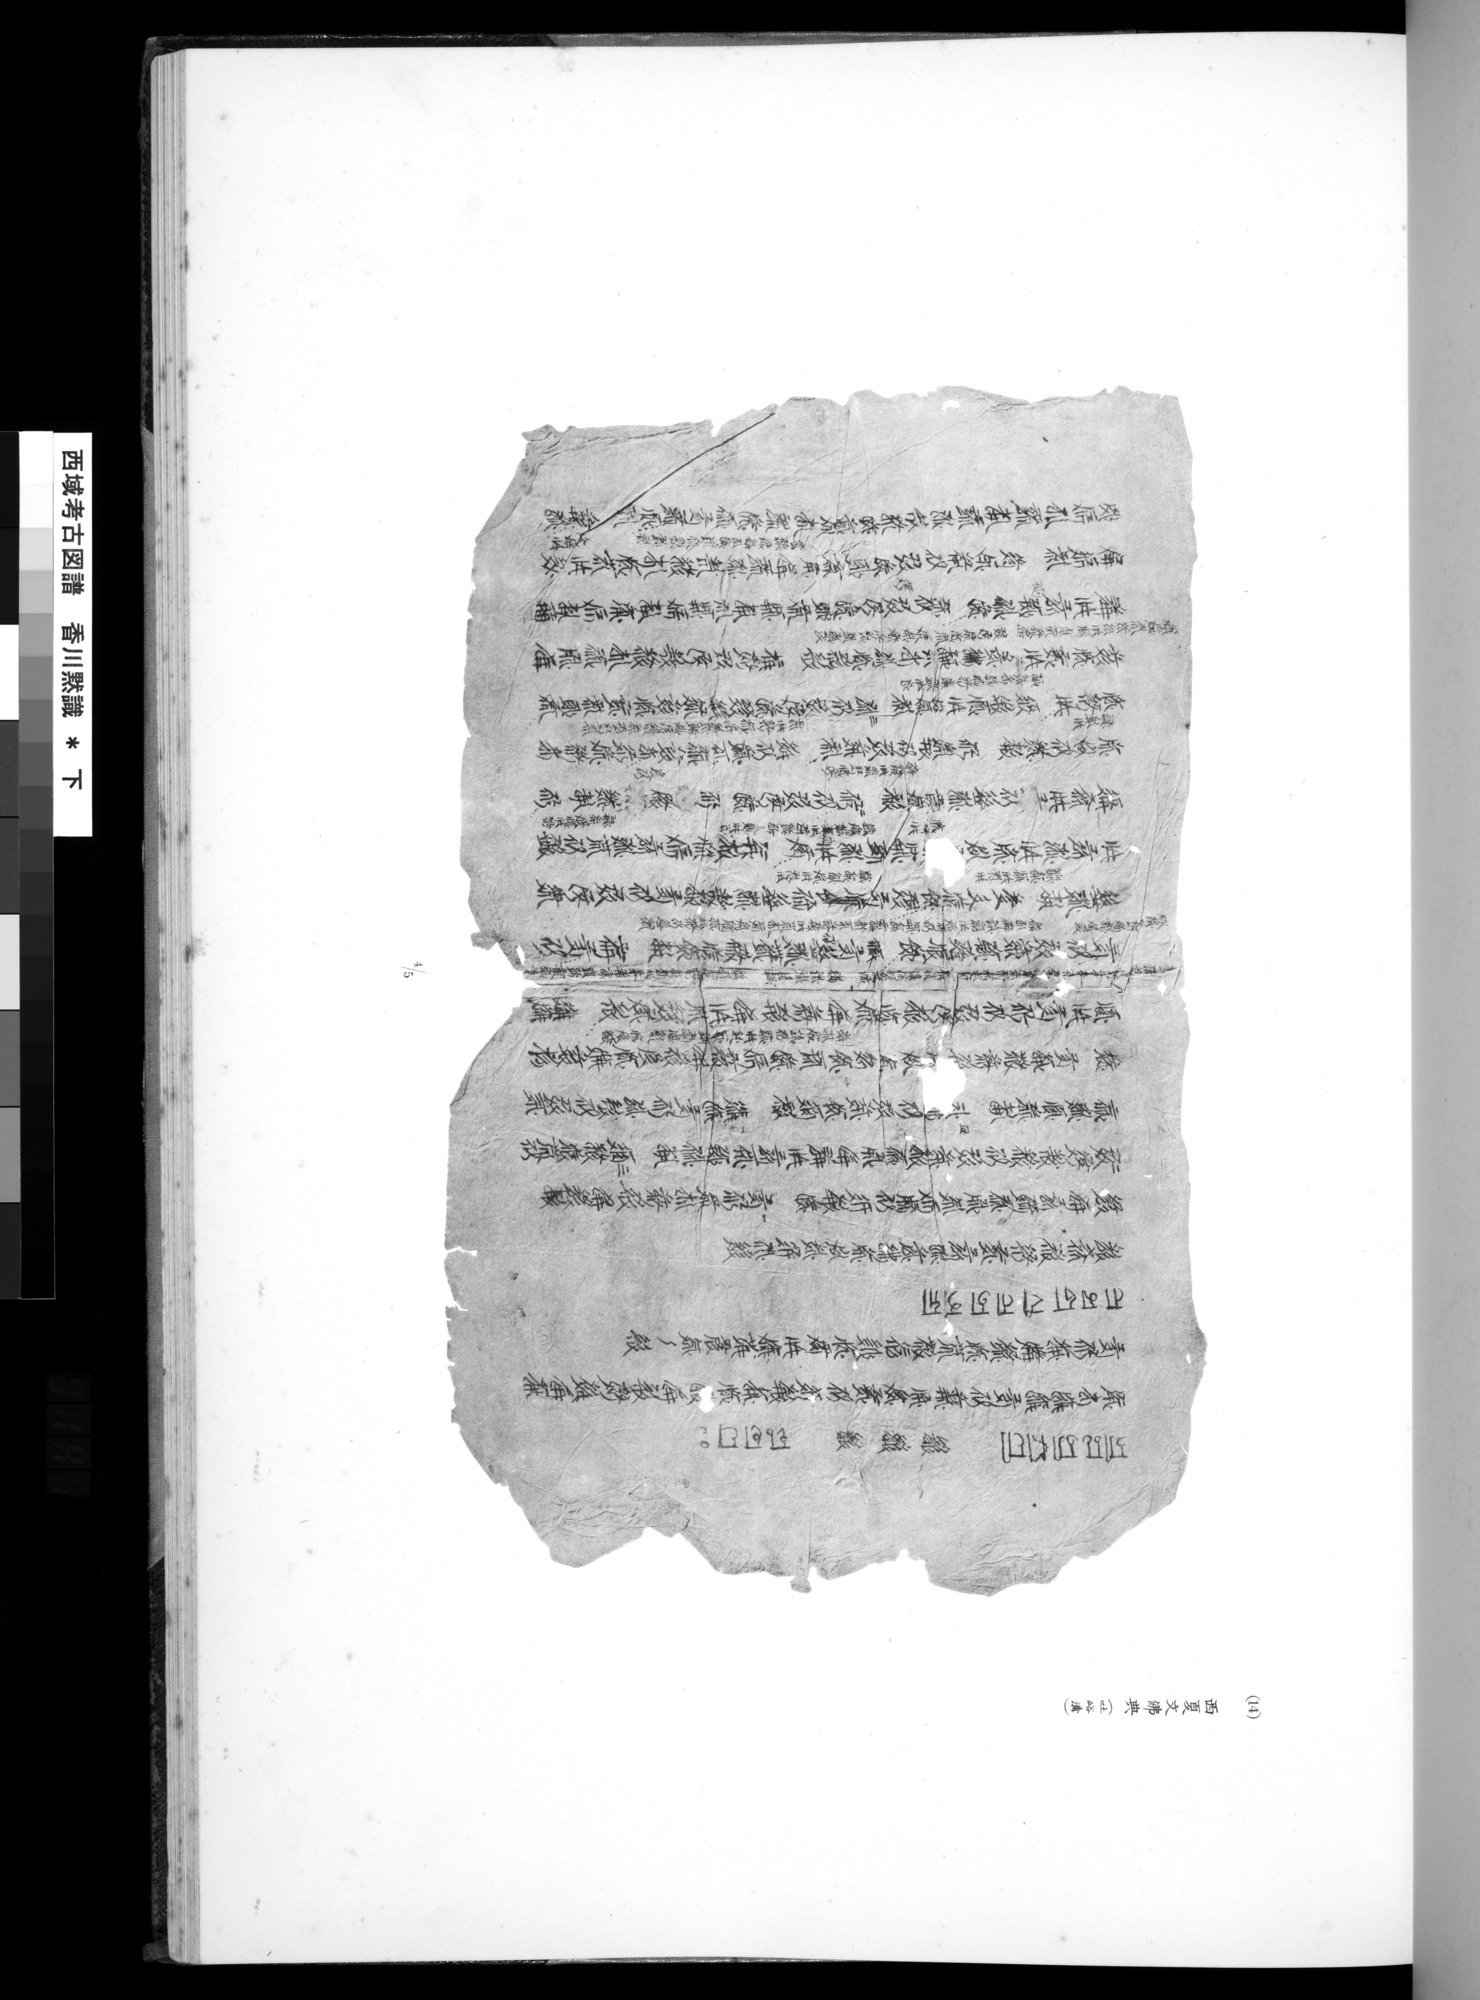 西域考古図譜 : vol.2 / 281 ページ（白黒高解像度画像）